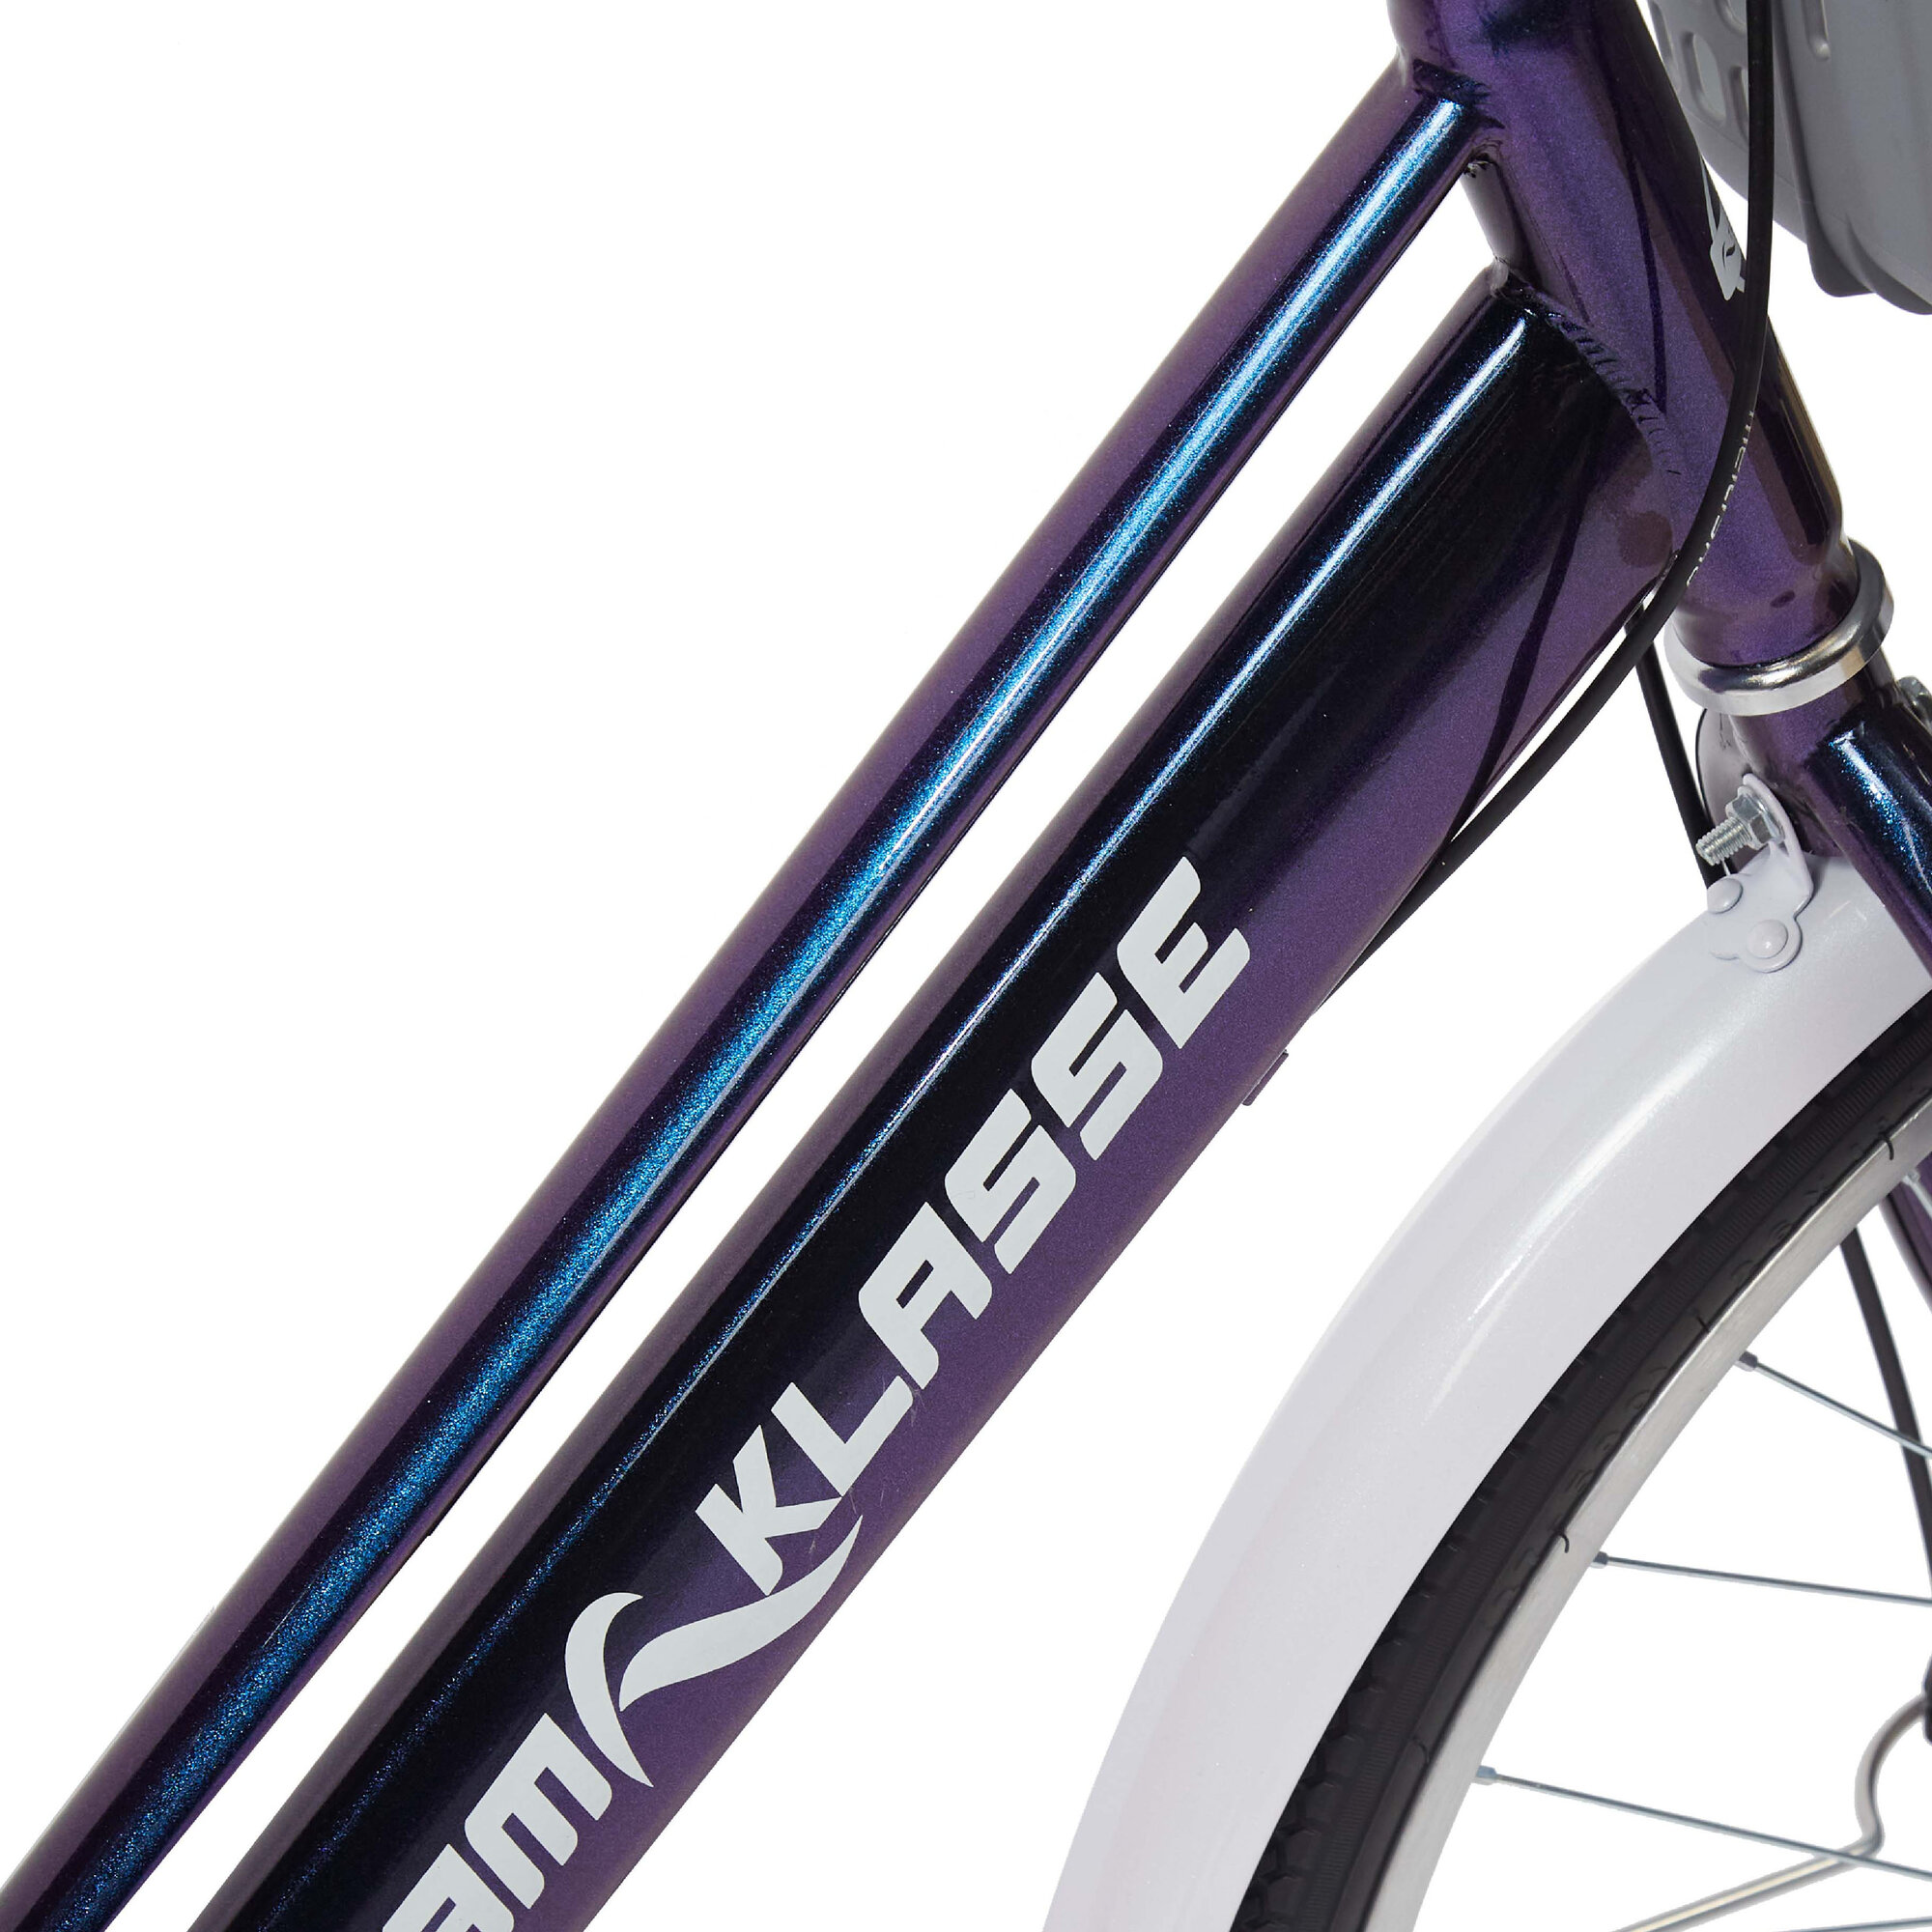 Прогулочный велосипед Team Klasse E-2-E, фиолетовый, диаметр колес 26 дюймов